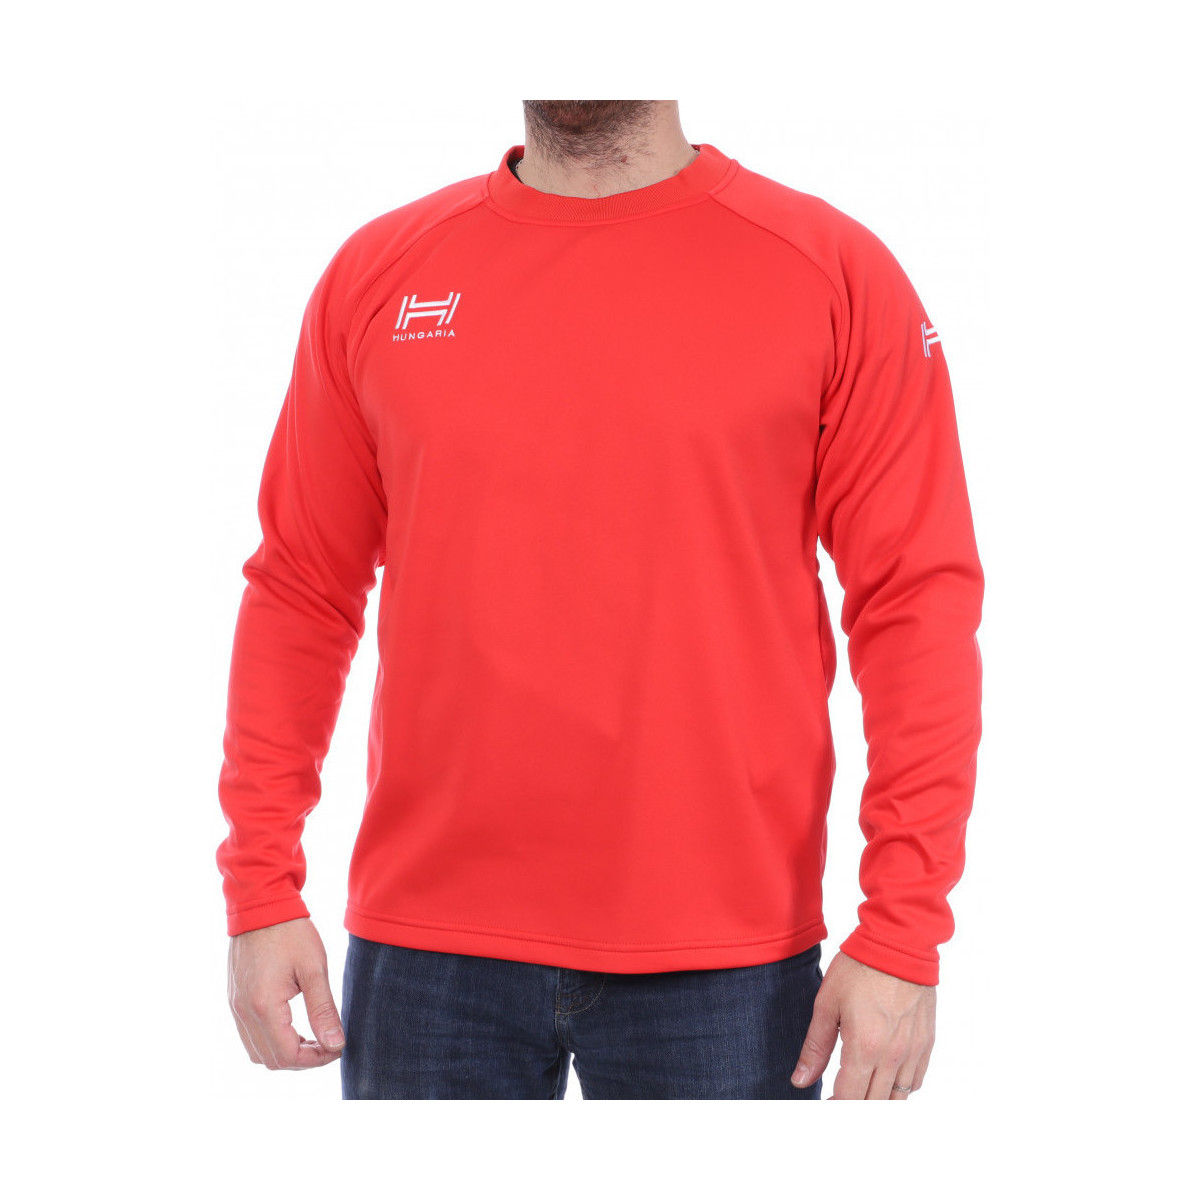 Textiel Heren Sweaters / Sweatshirts Hungaria  Rood